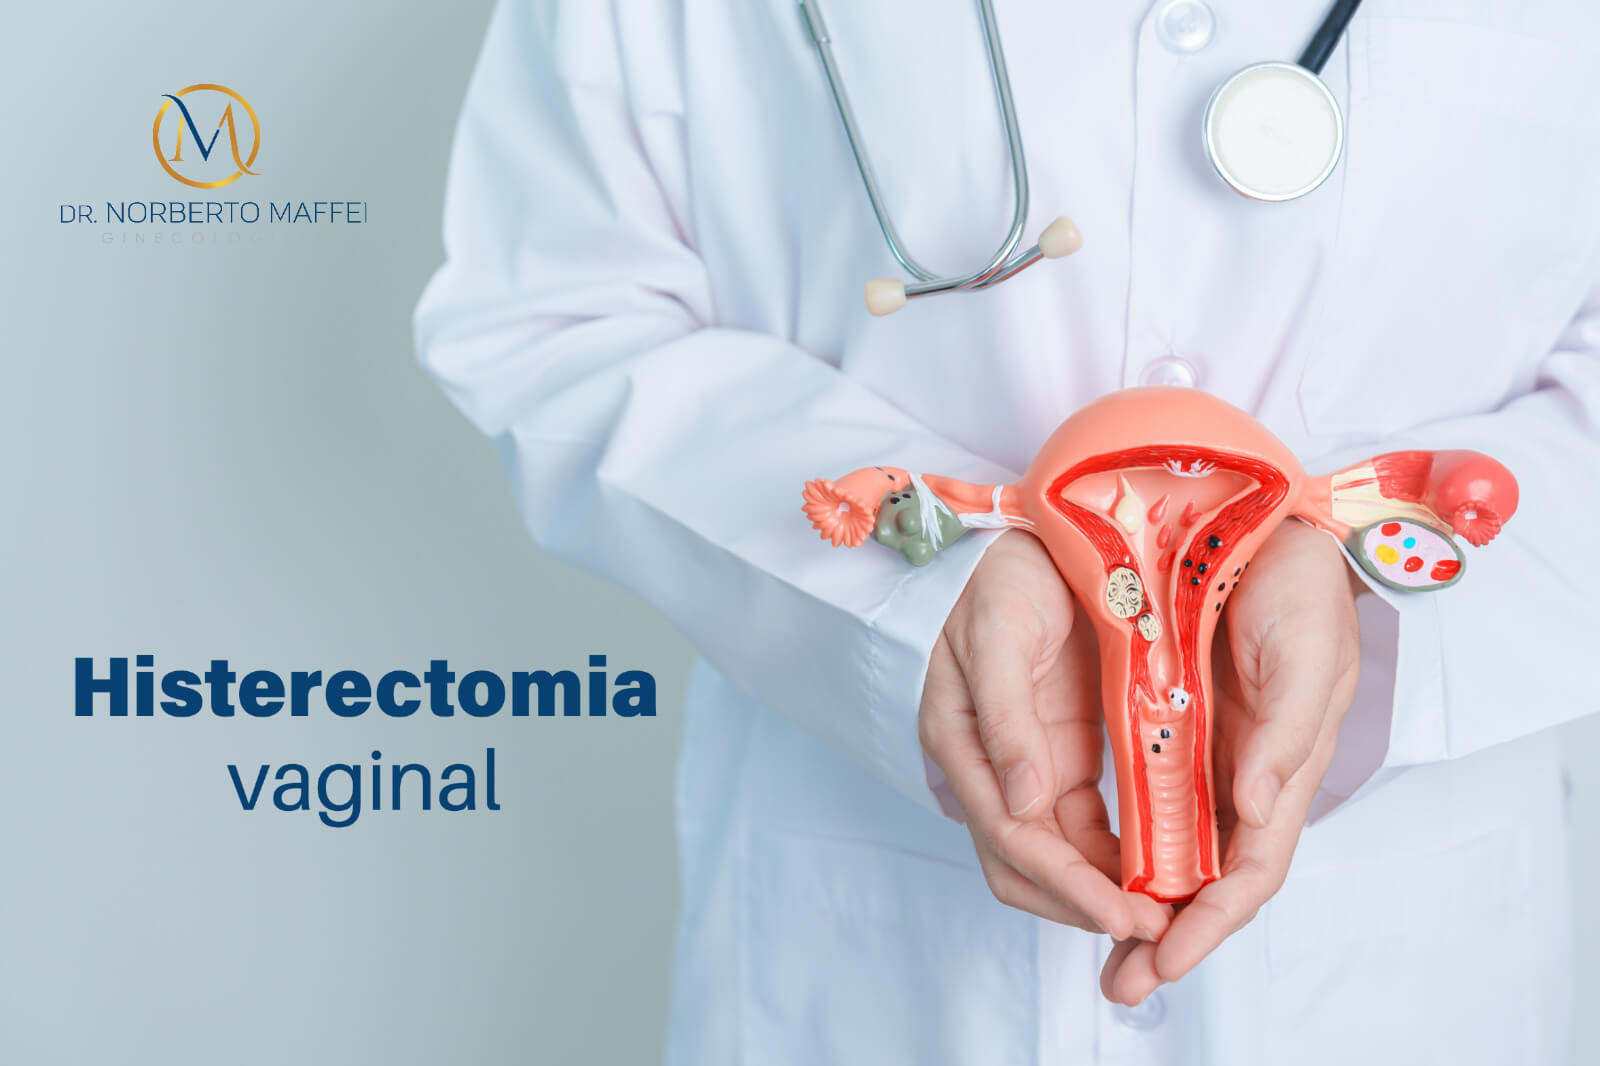 Histerectomia vaginal